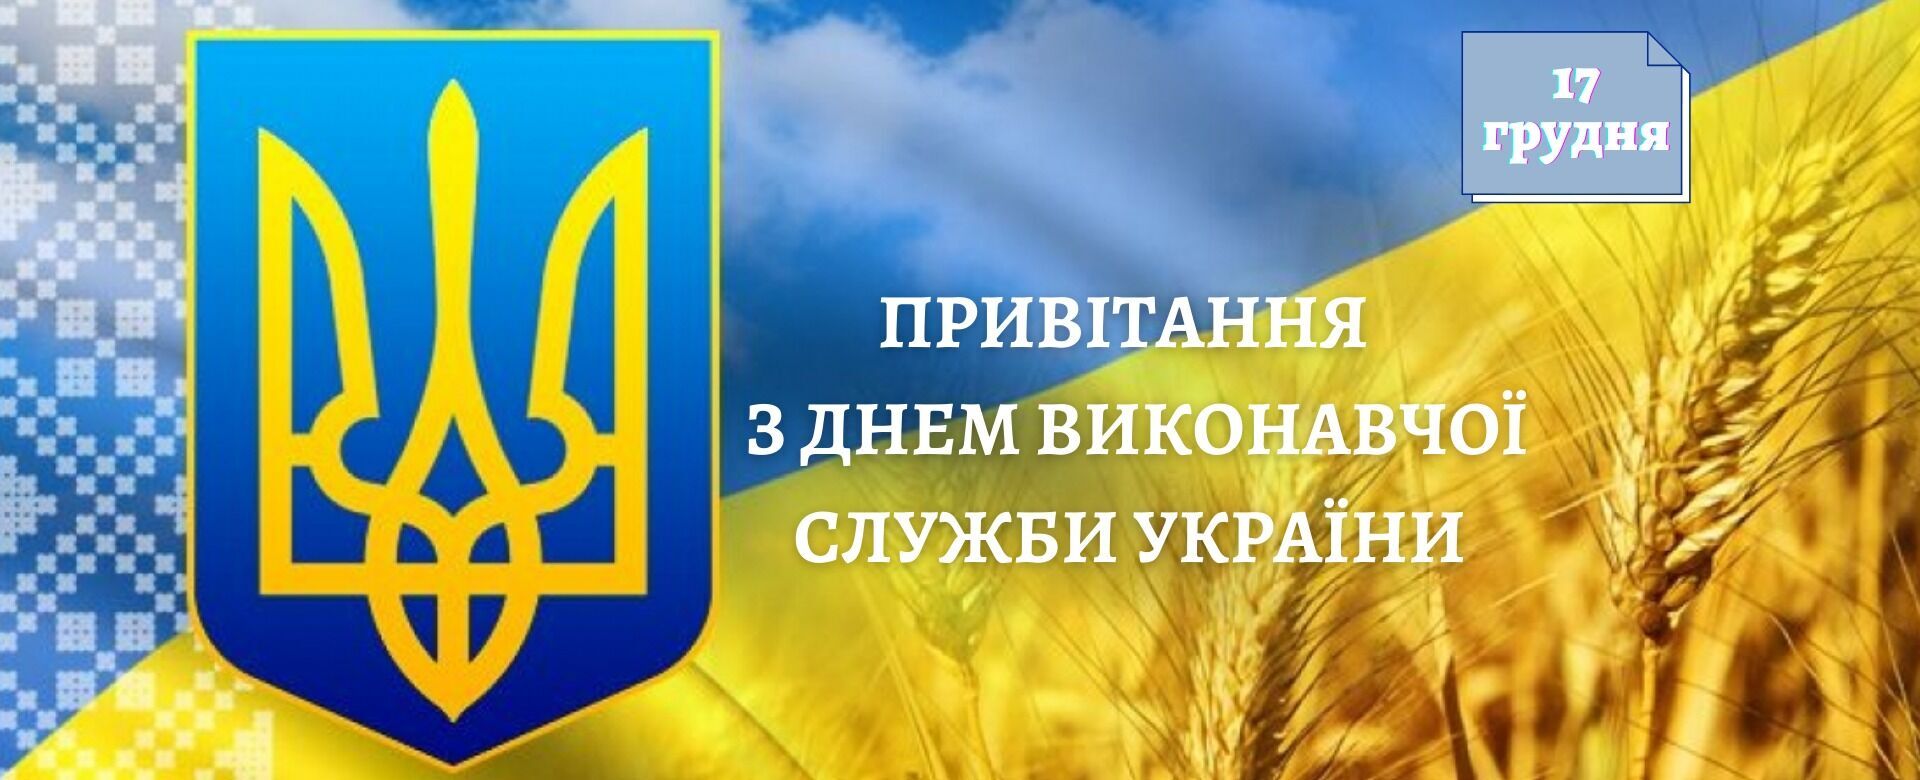 Открытка в День работника исполнительной службы Украины